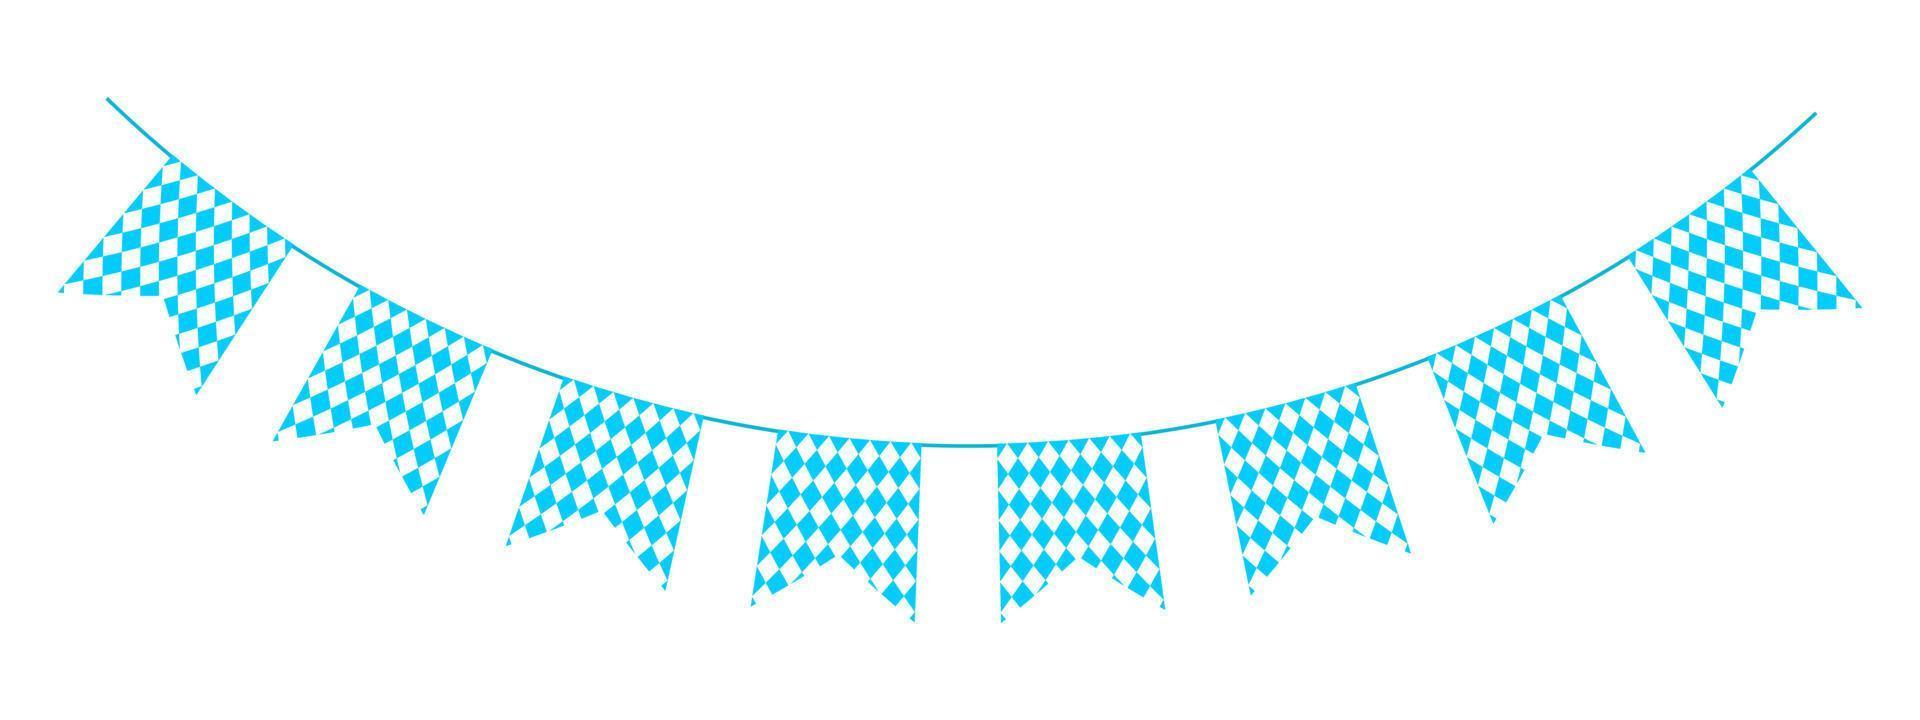 oktoberfest guirlande avec drapeaux dans bavarois couleurs. bruant pour traditionnel allemand Bière Festival avec bleu et blanc rhombe modèle. décoration pour bannière, carte, affiche vecteur